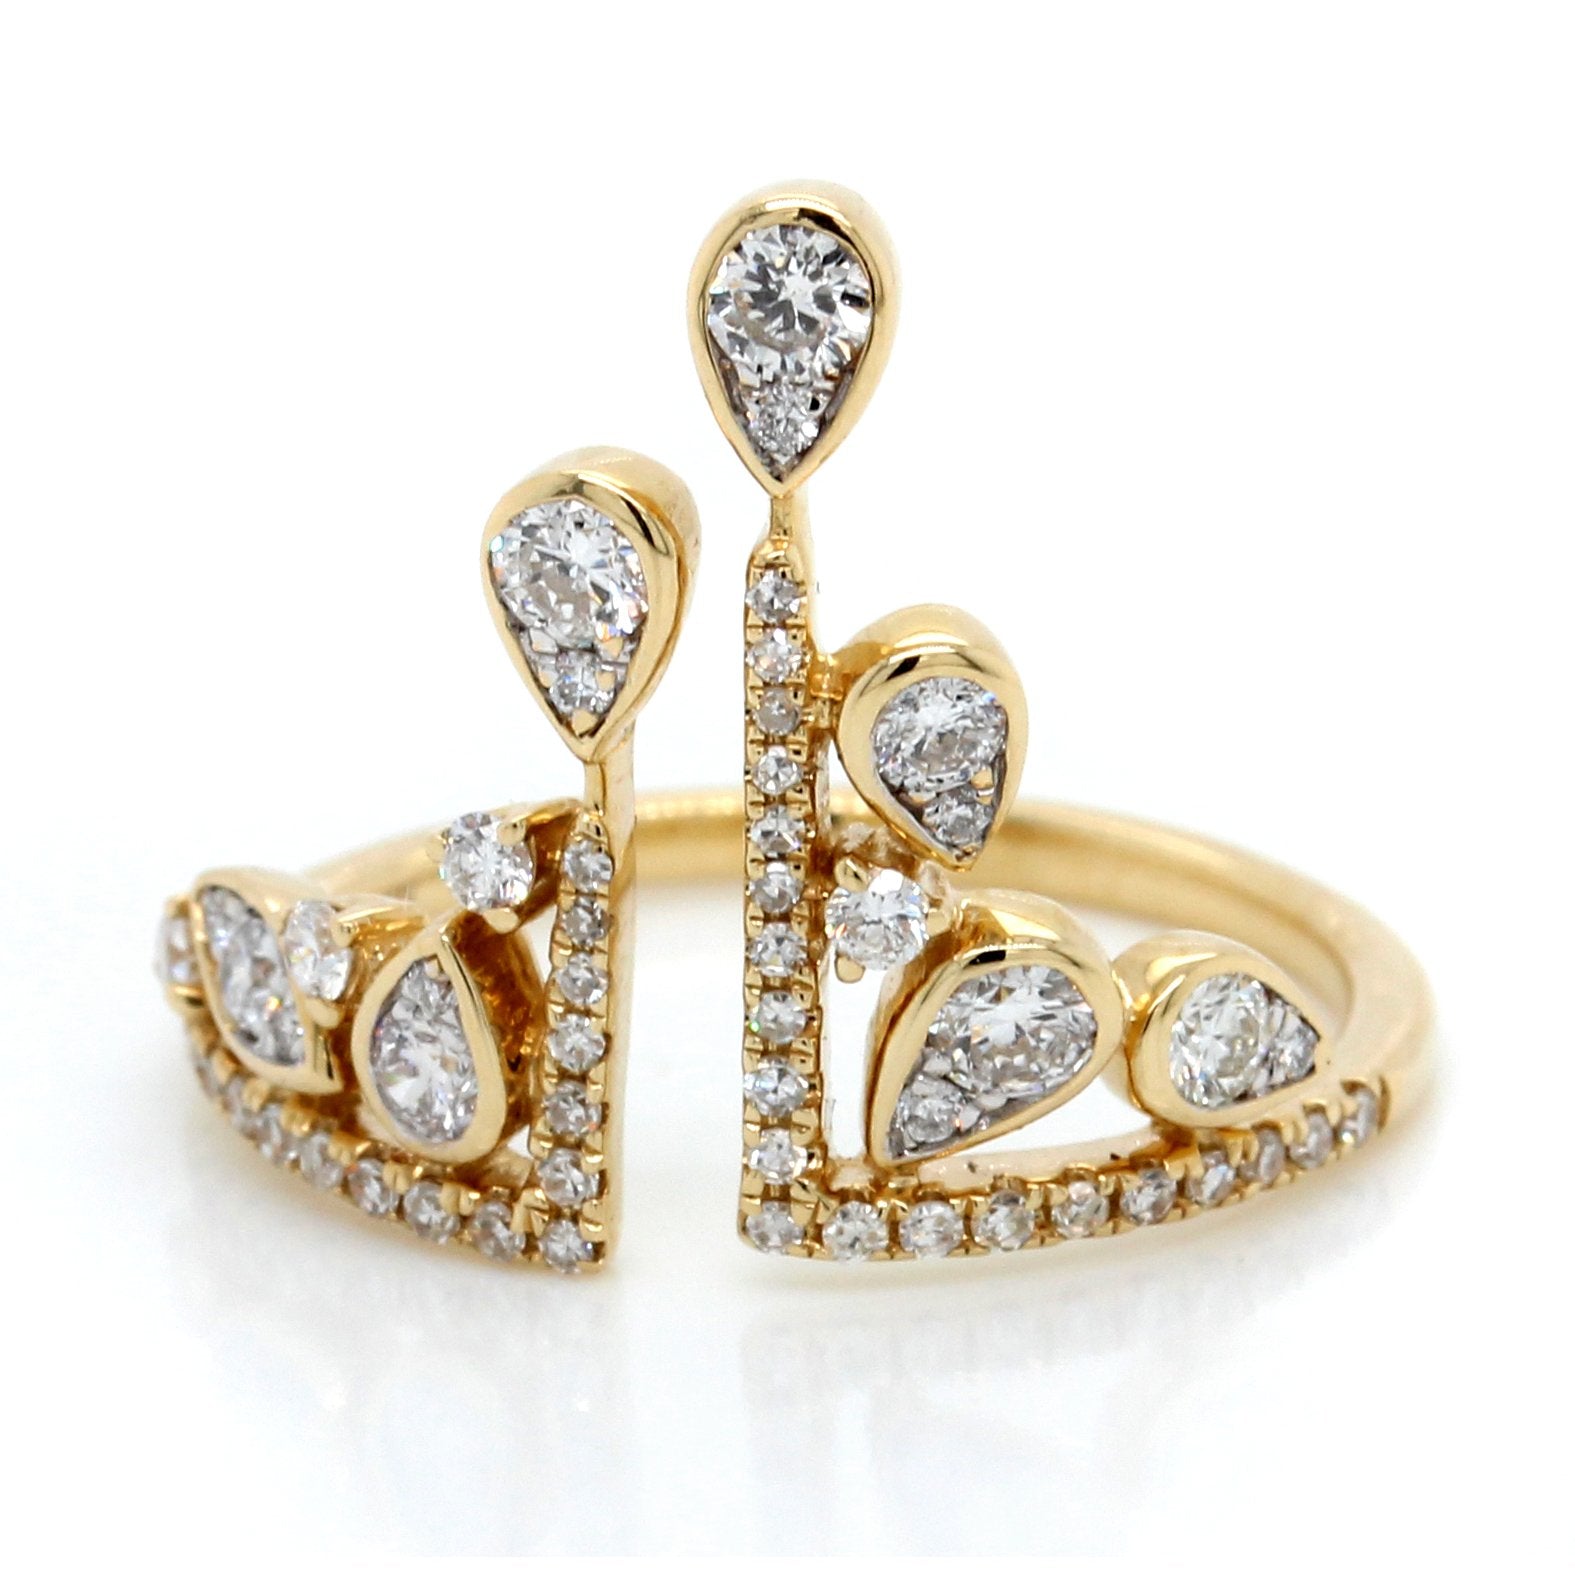 14K Yellow Gold Diamond Crown Ring